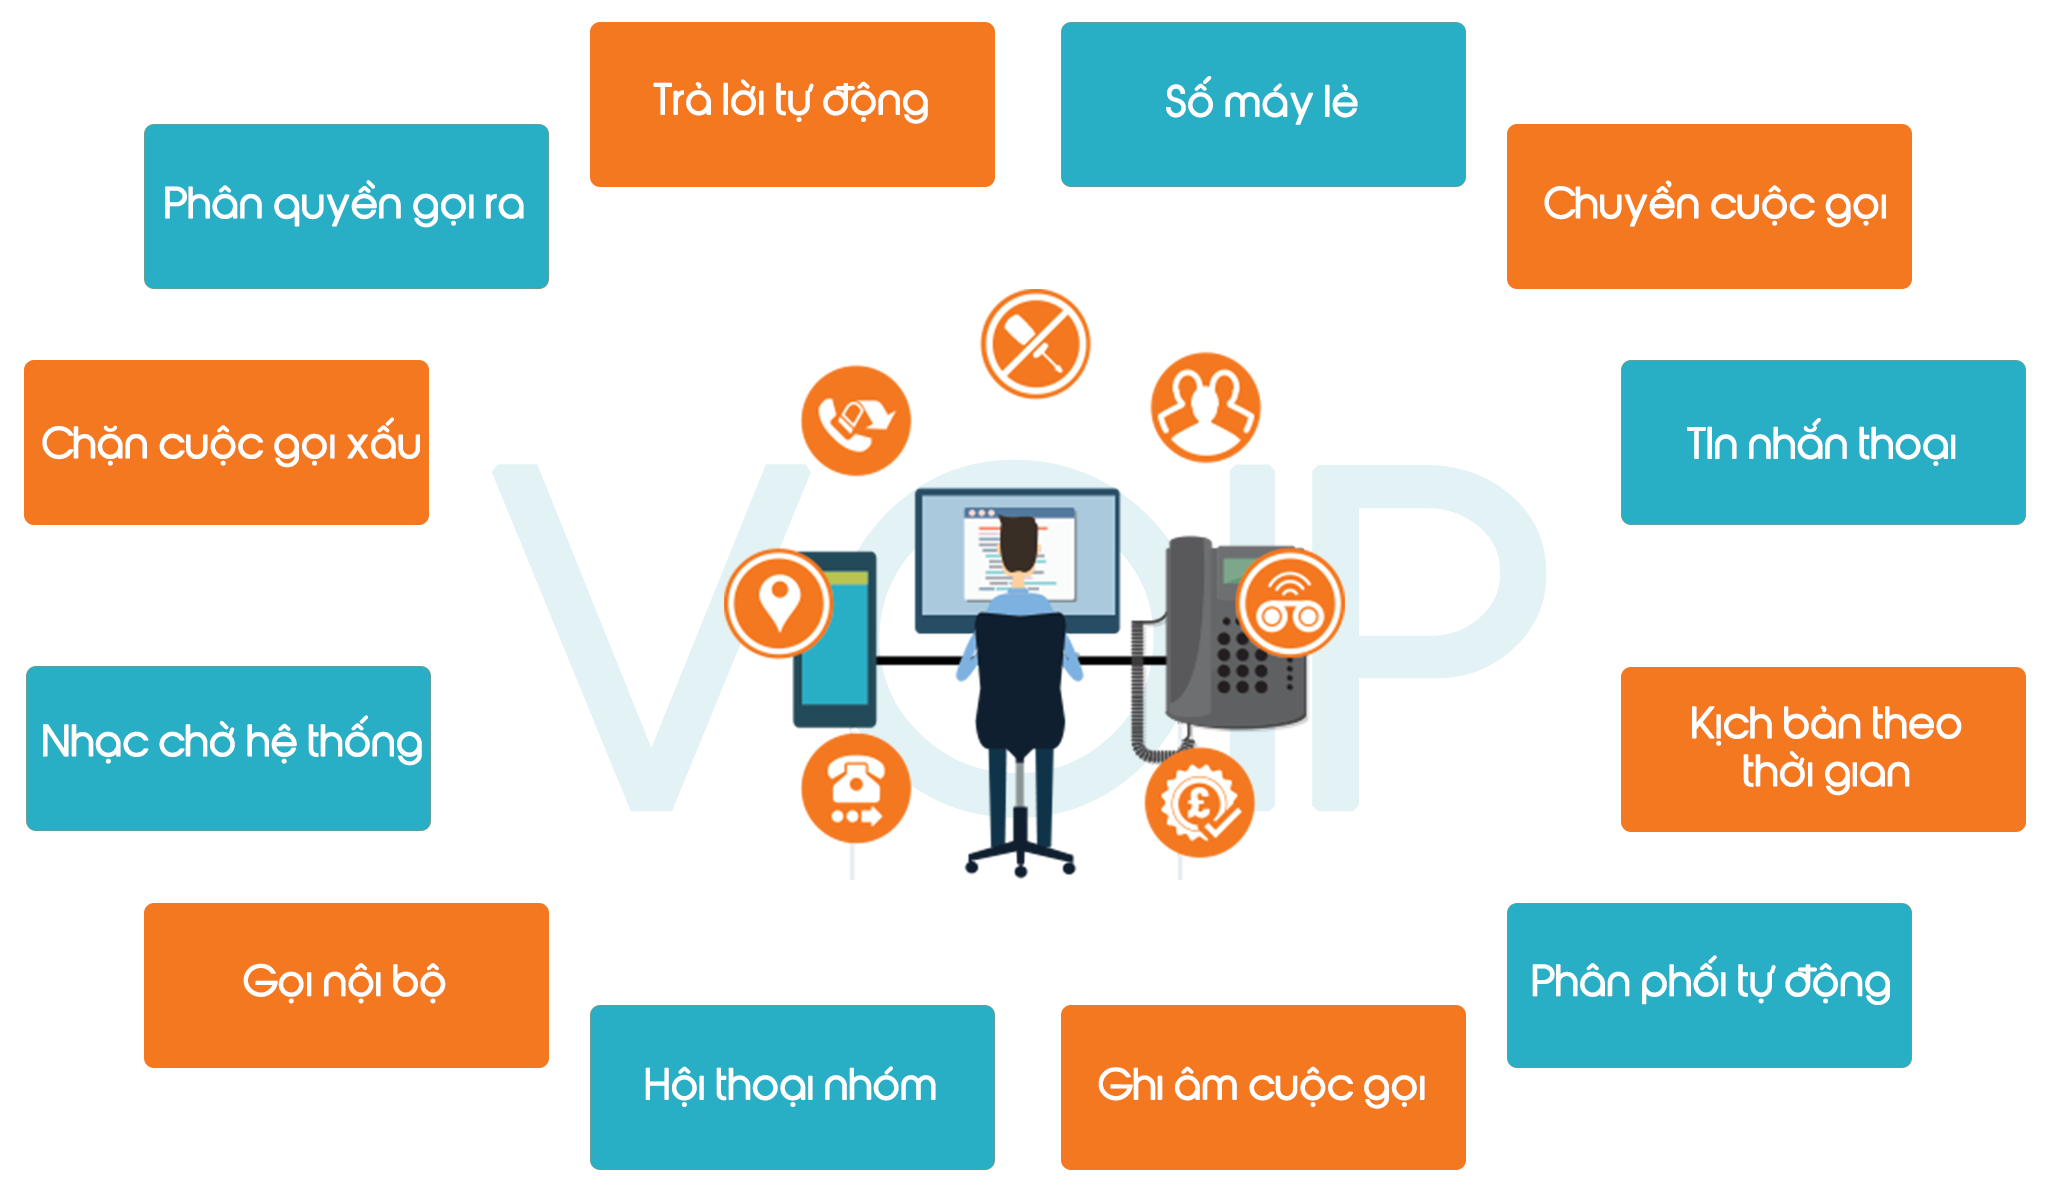 Lắp tổng đài cho văn phòng bằng VoIP mang lại nhiều lợi ích cho doanh nghiệp